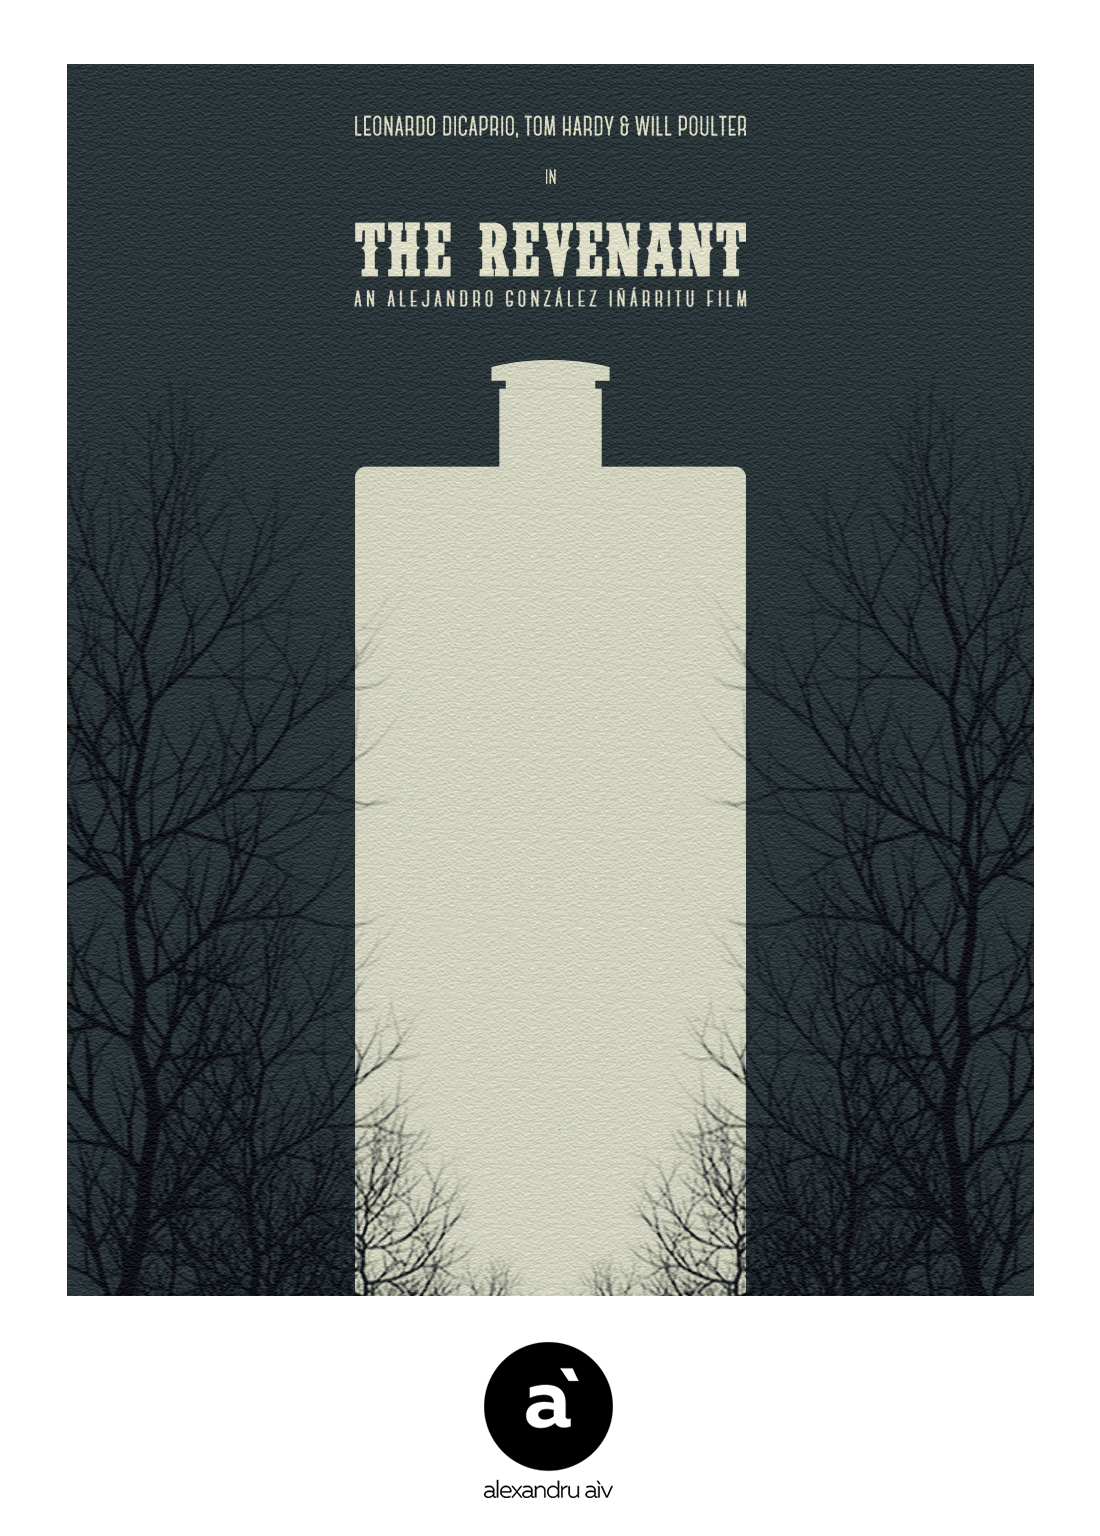 The-Revenant